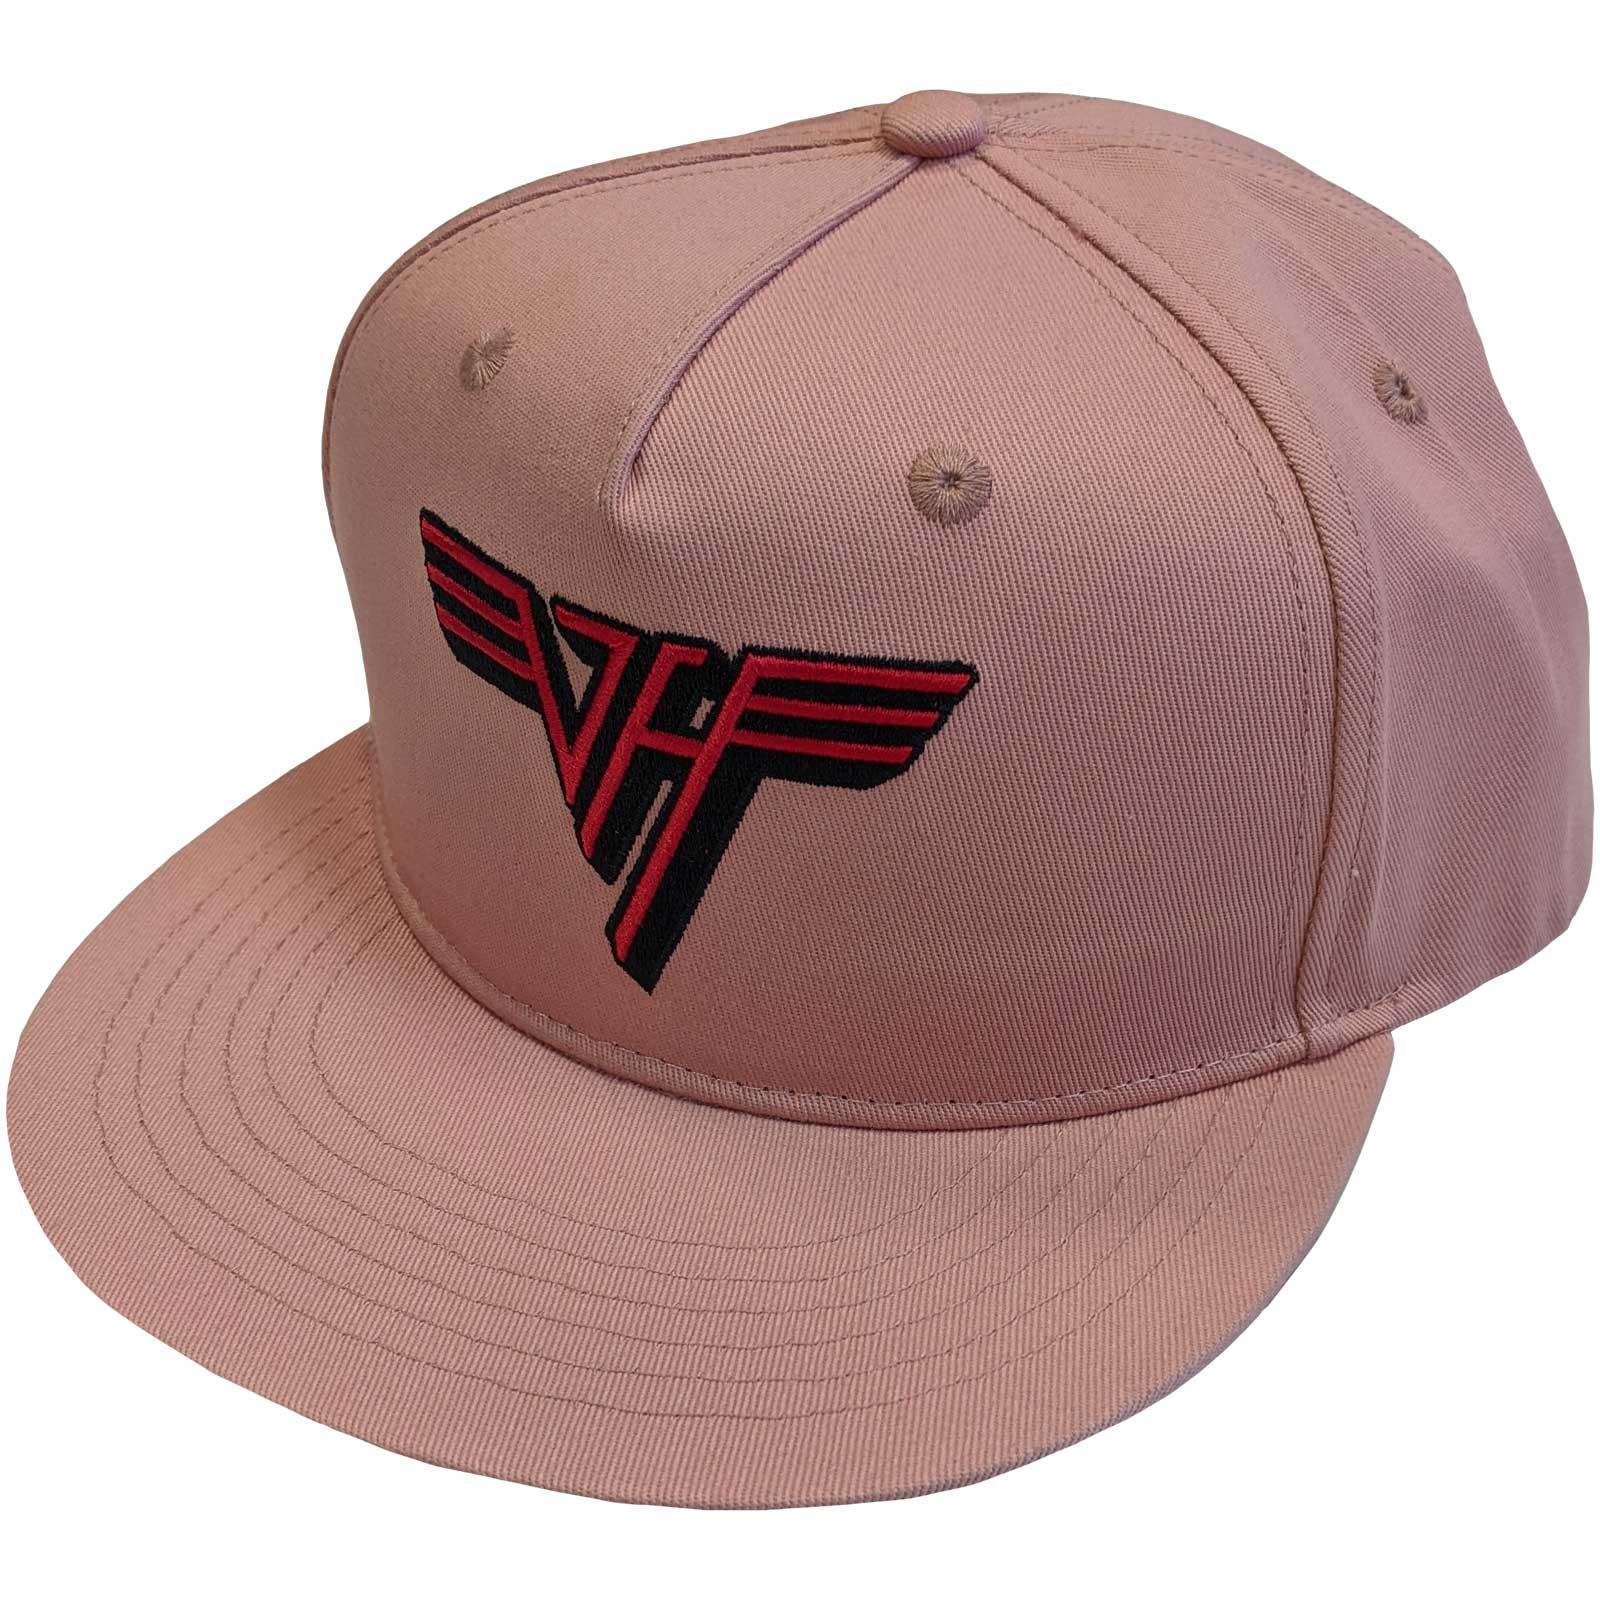 (ヴァン・ヘイレン) Van Halen オフィシャル商品 ユニセックス クラシック ロゴ キャップ スナップバック 帽子 ハット 【海外通販】